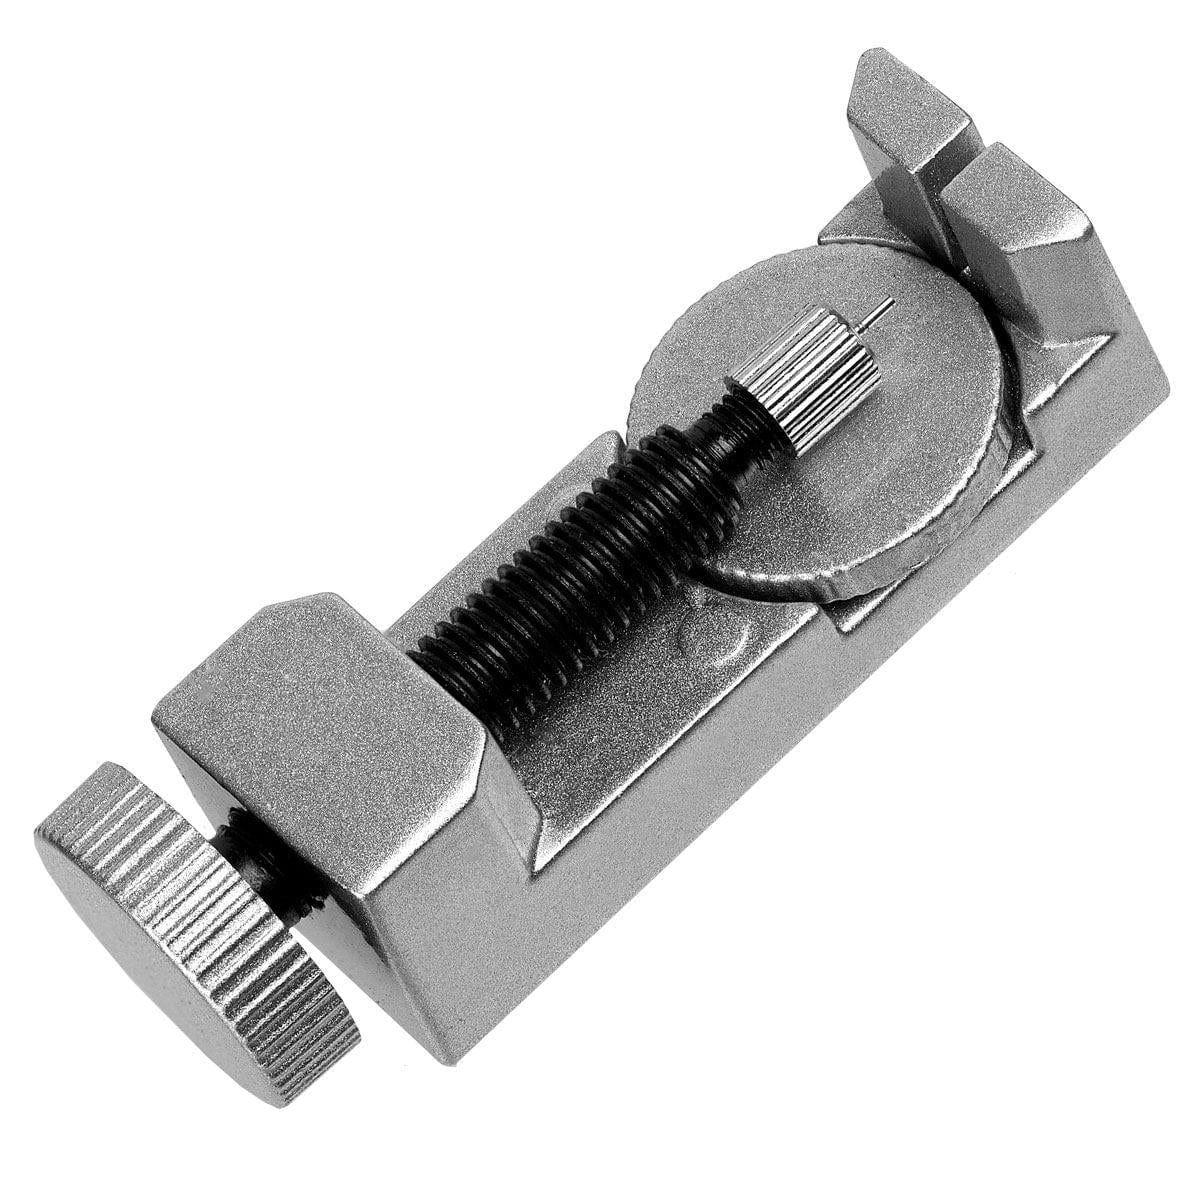 Metal Link removal tool for Bracelet